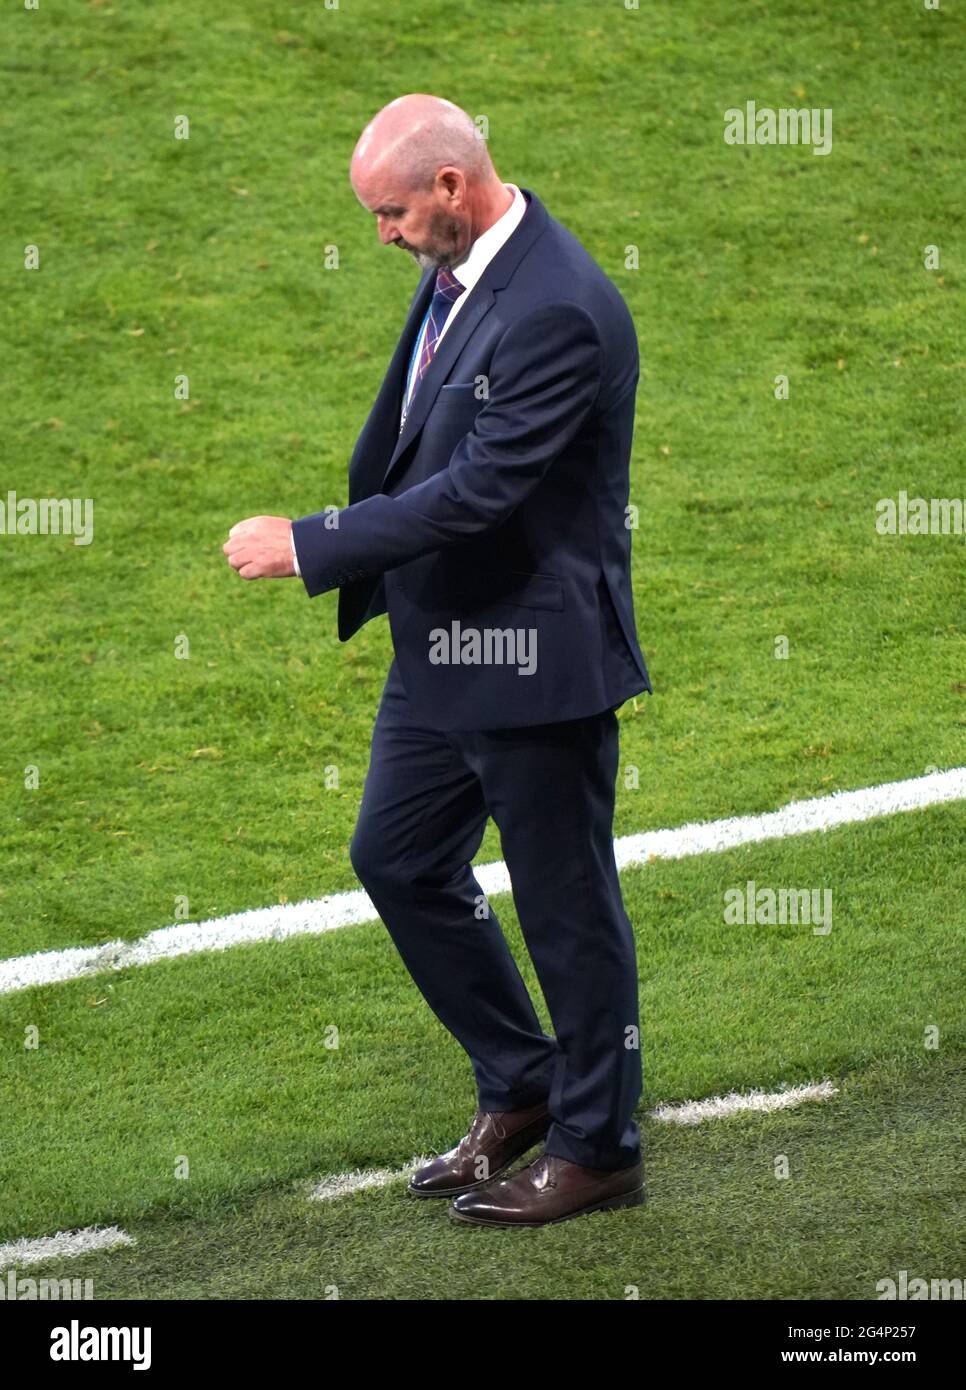 Le directeur écossais Steve Clarke réagit après le coup de sifflet final lors du match de l'UEFA Euro 2020 Group D à Hampden Park, Glasgow. Date de la photo: Mardi 22 juin 2021. Banque D'Images